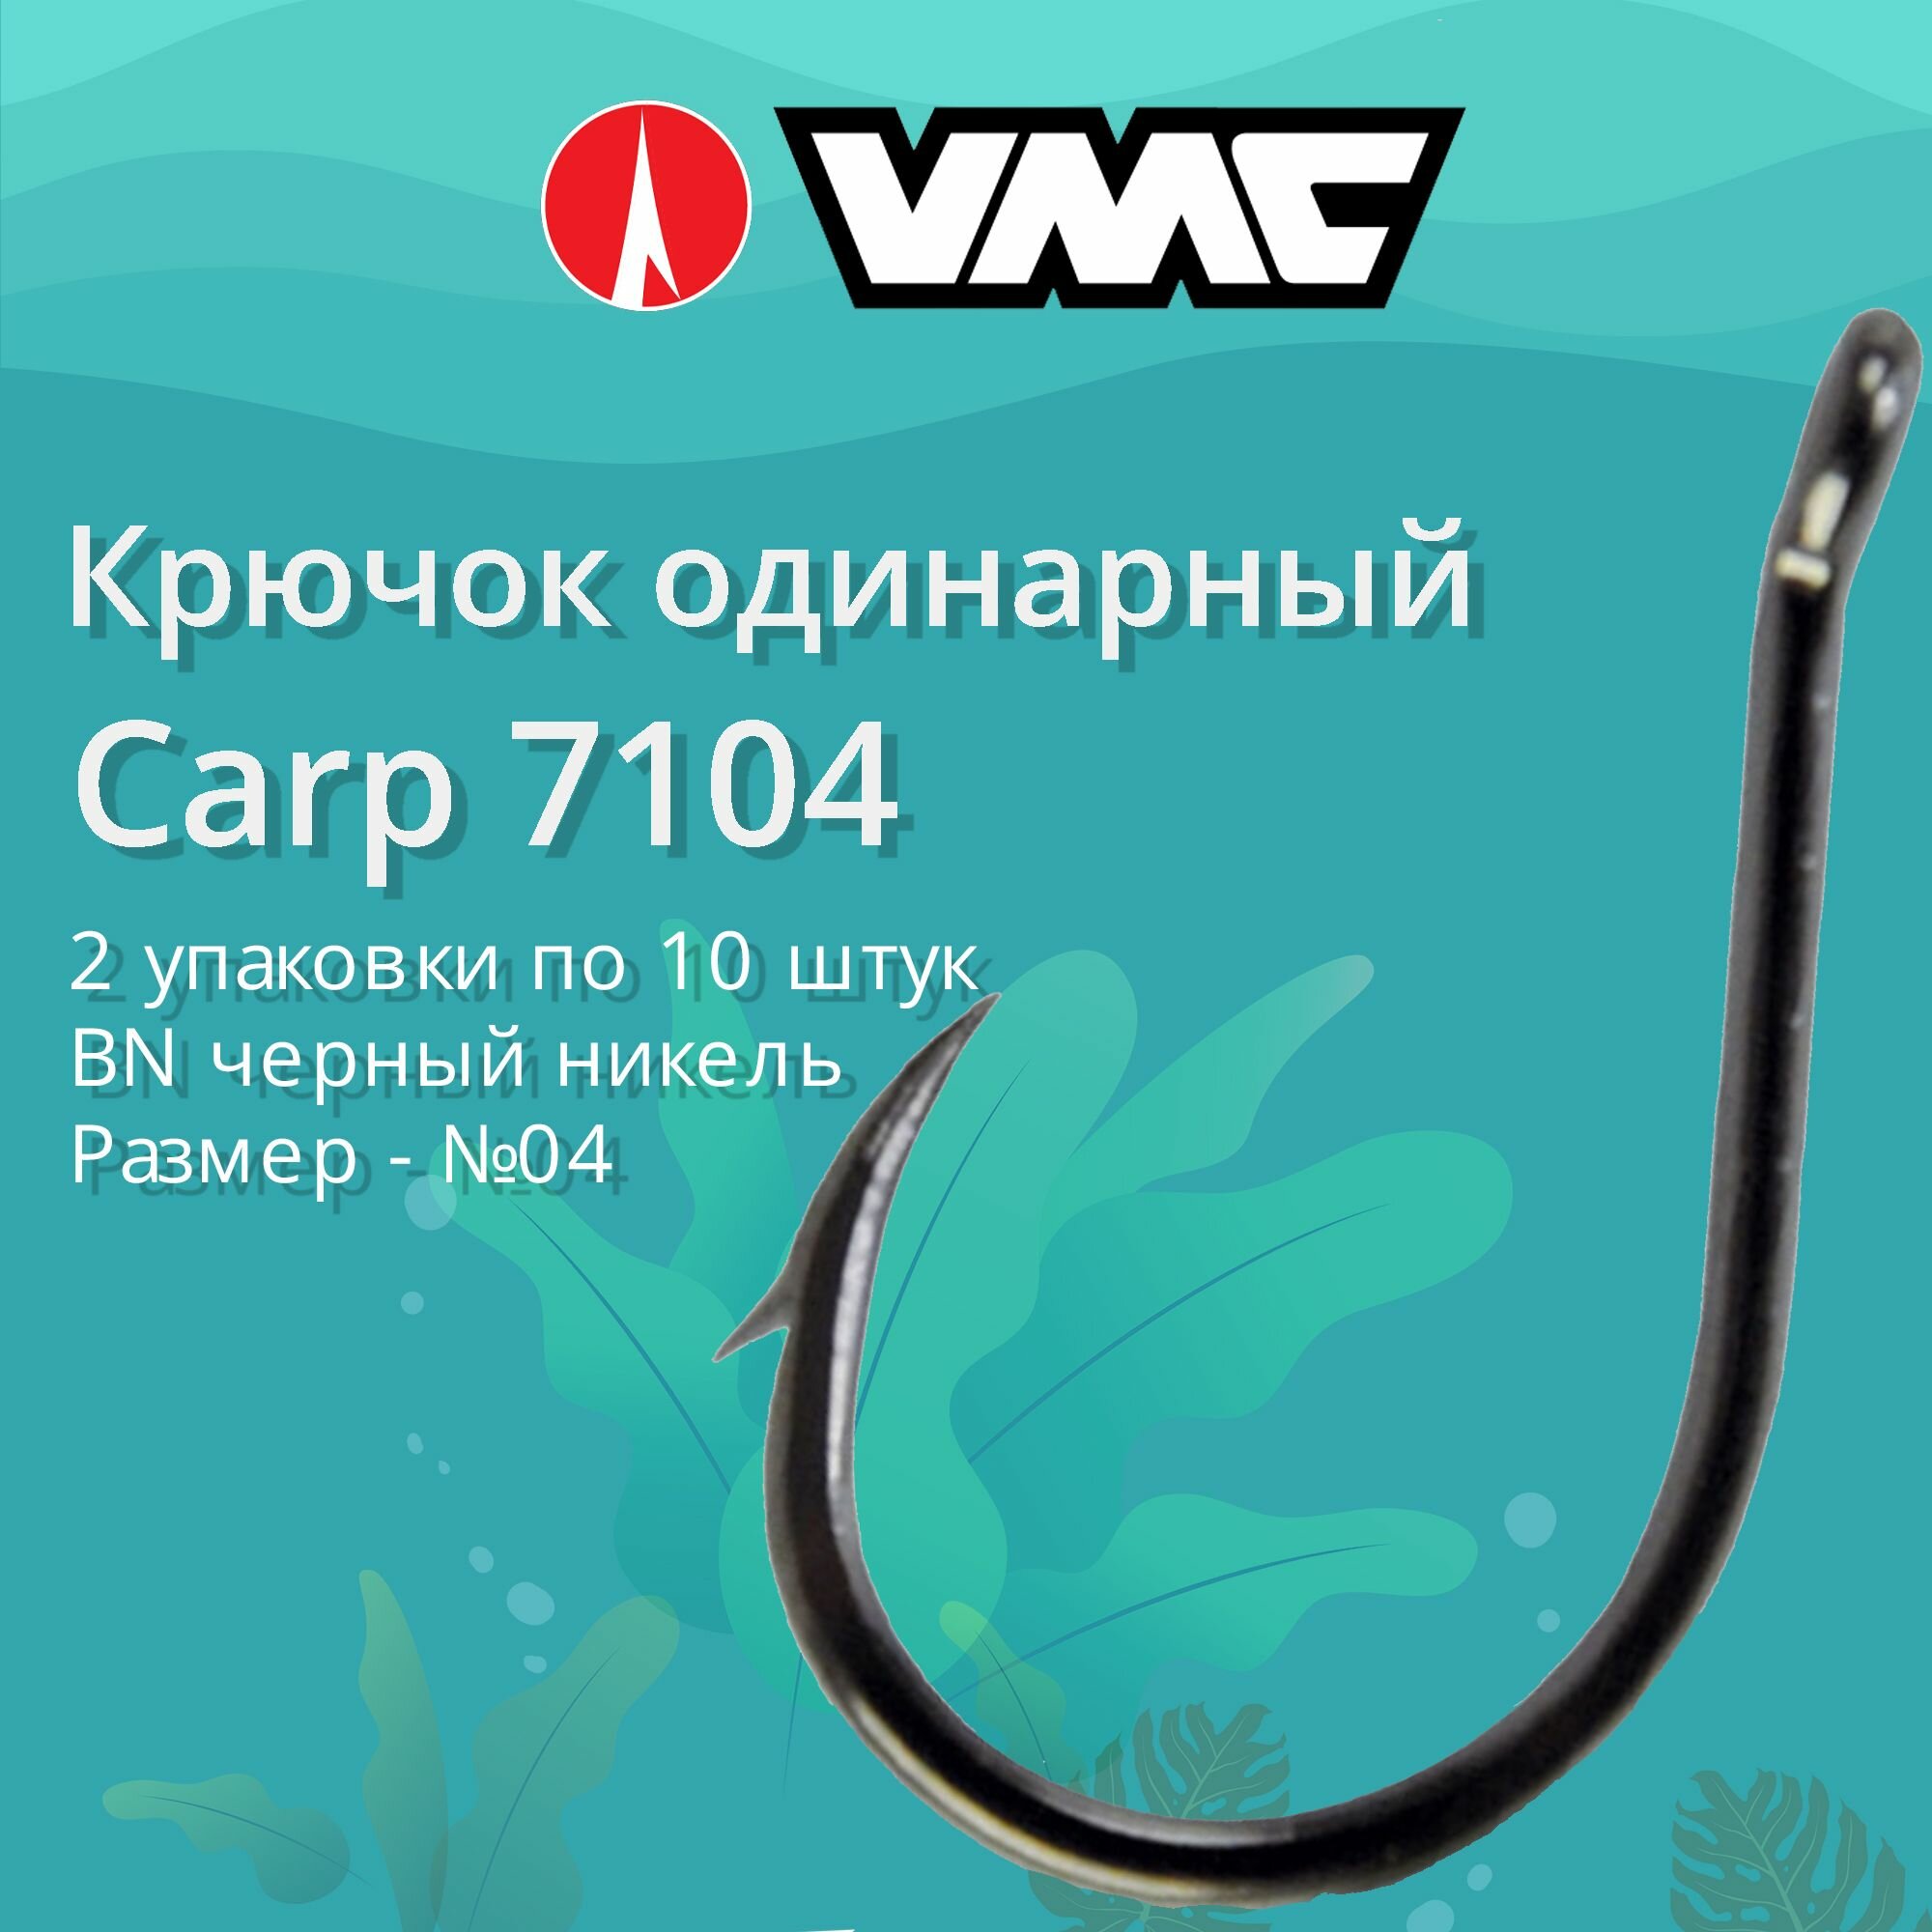 Крючки для рыбалки (одинарный) VMC Carp 7104 BN (черн. никель) №04 2 упаковки по 10 штук